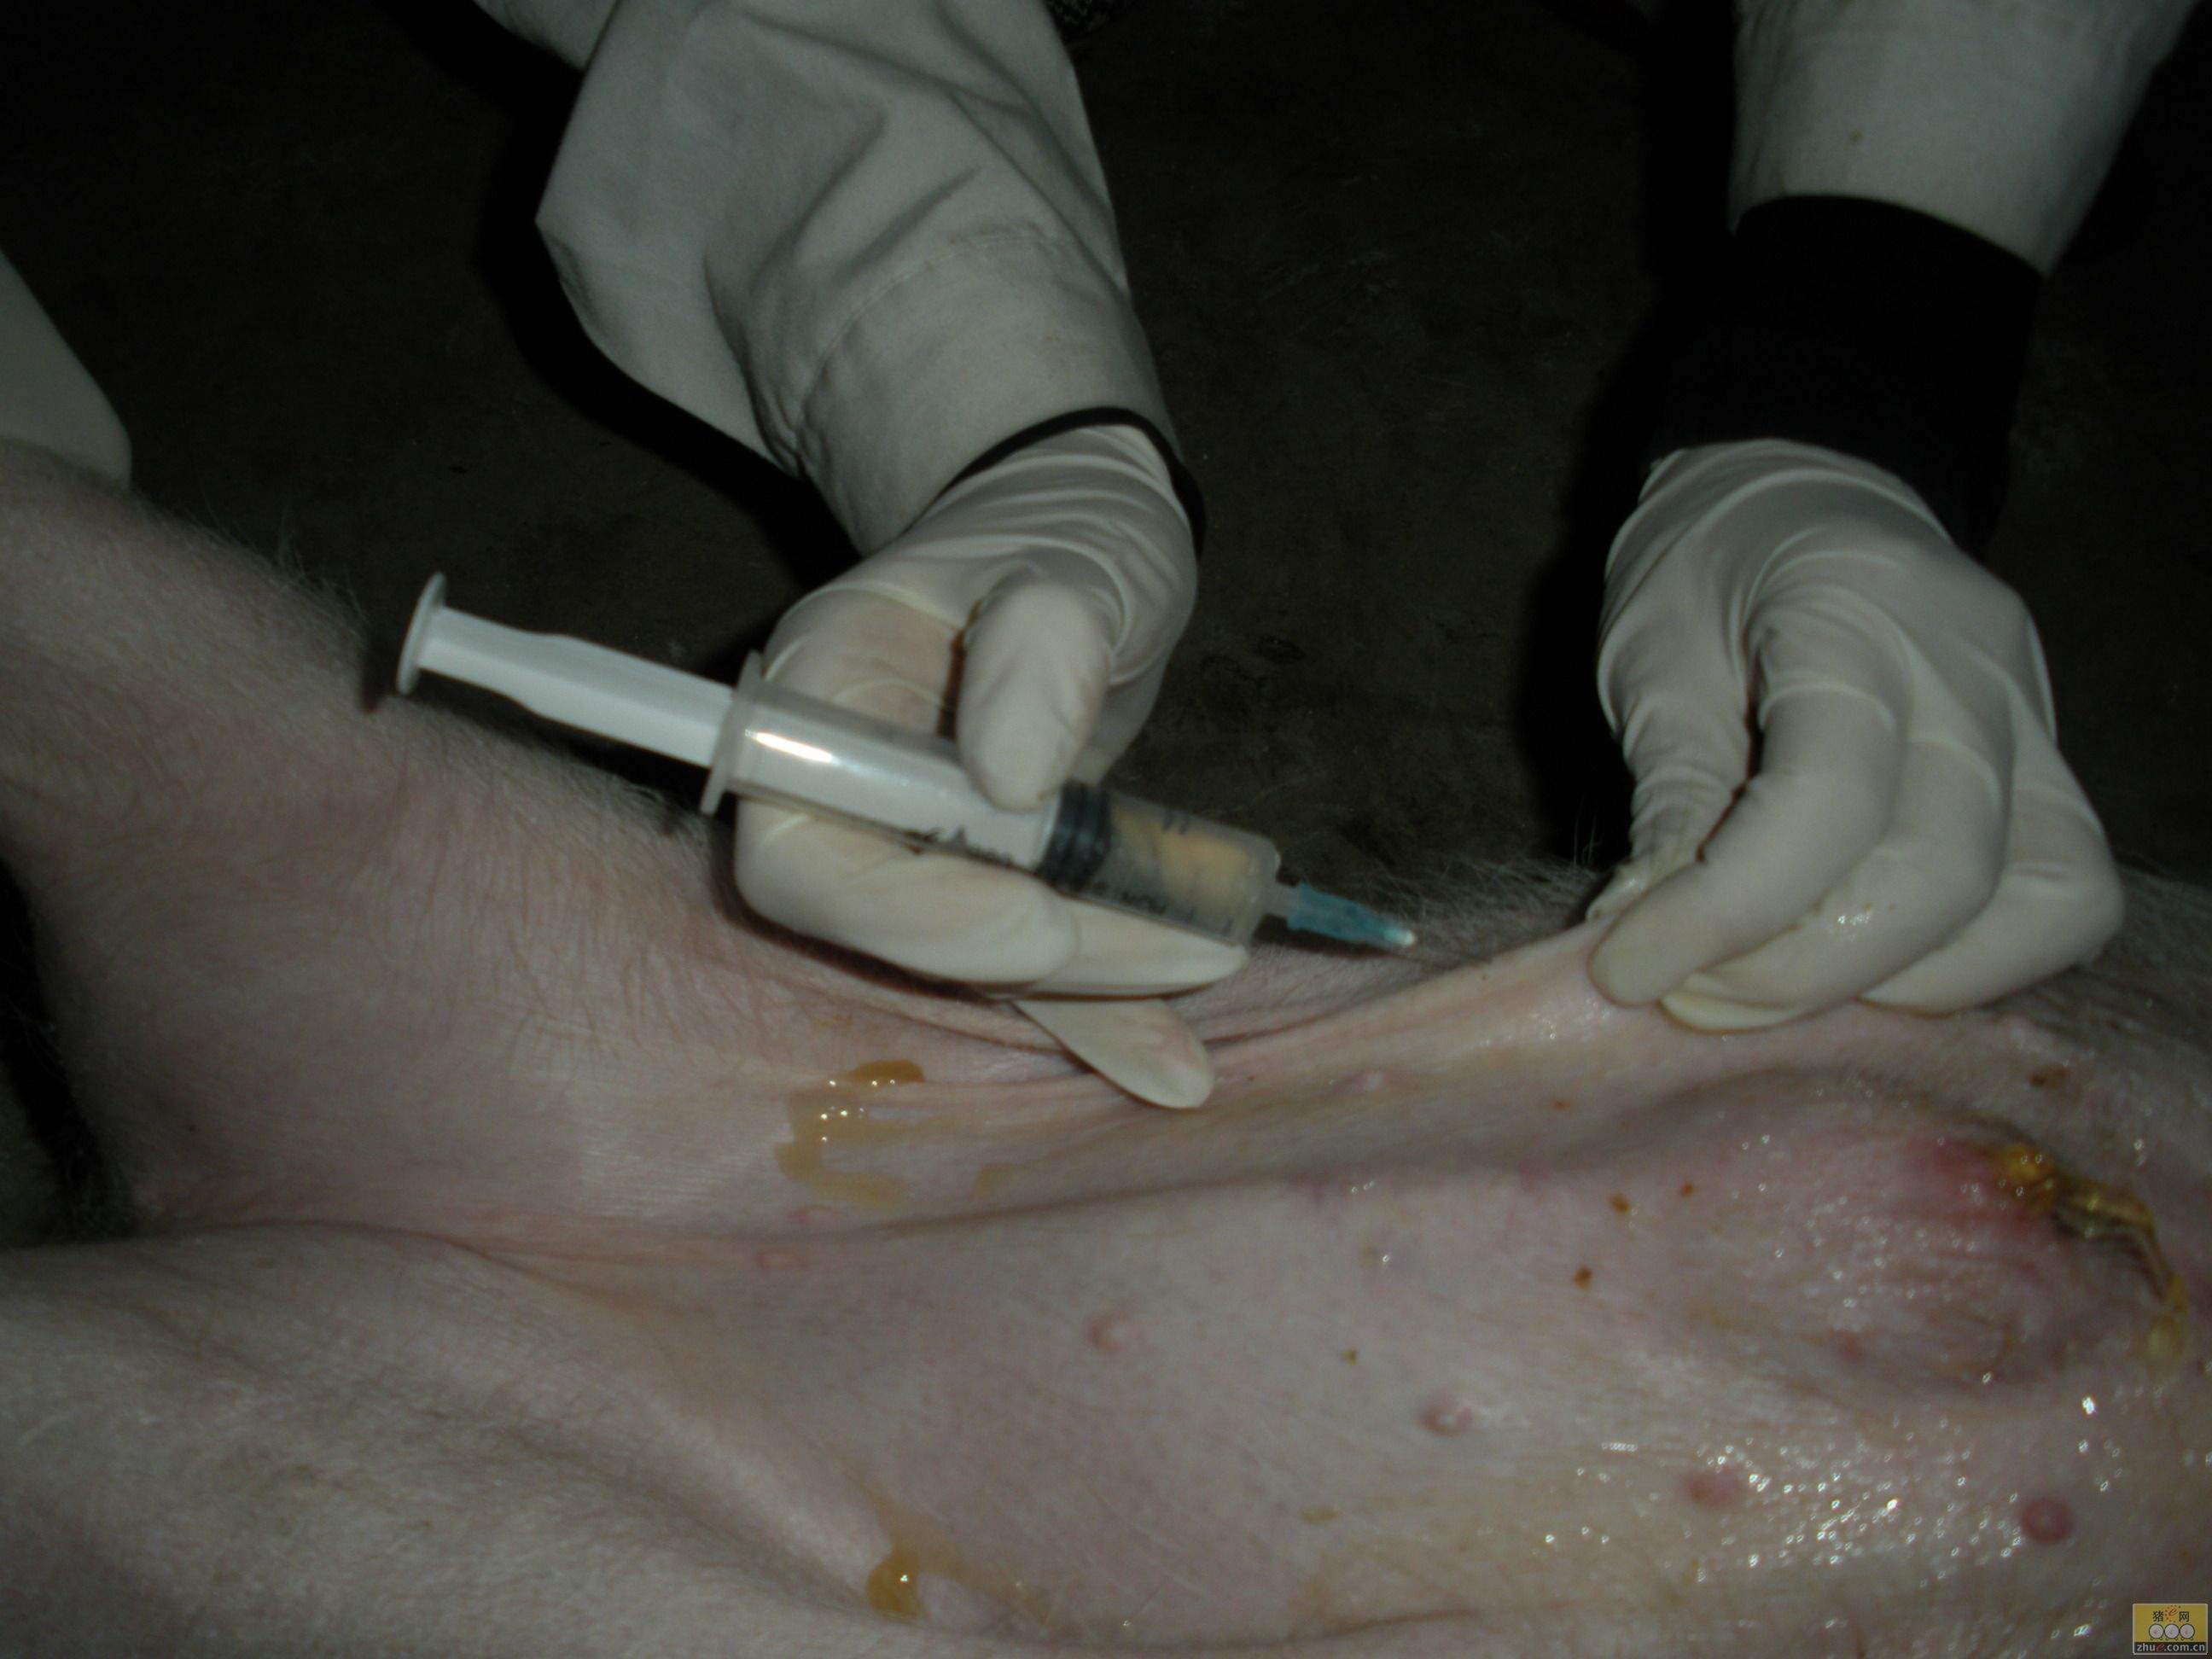 猪打针位置肌肉注射图片